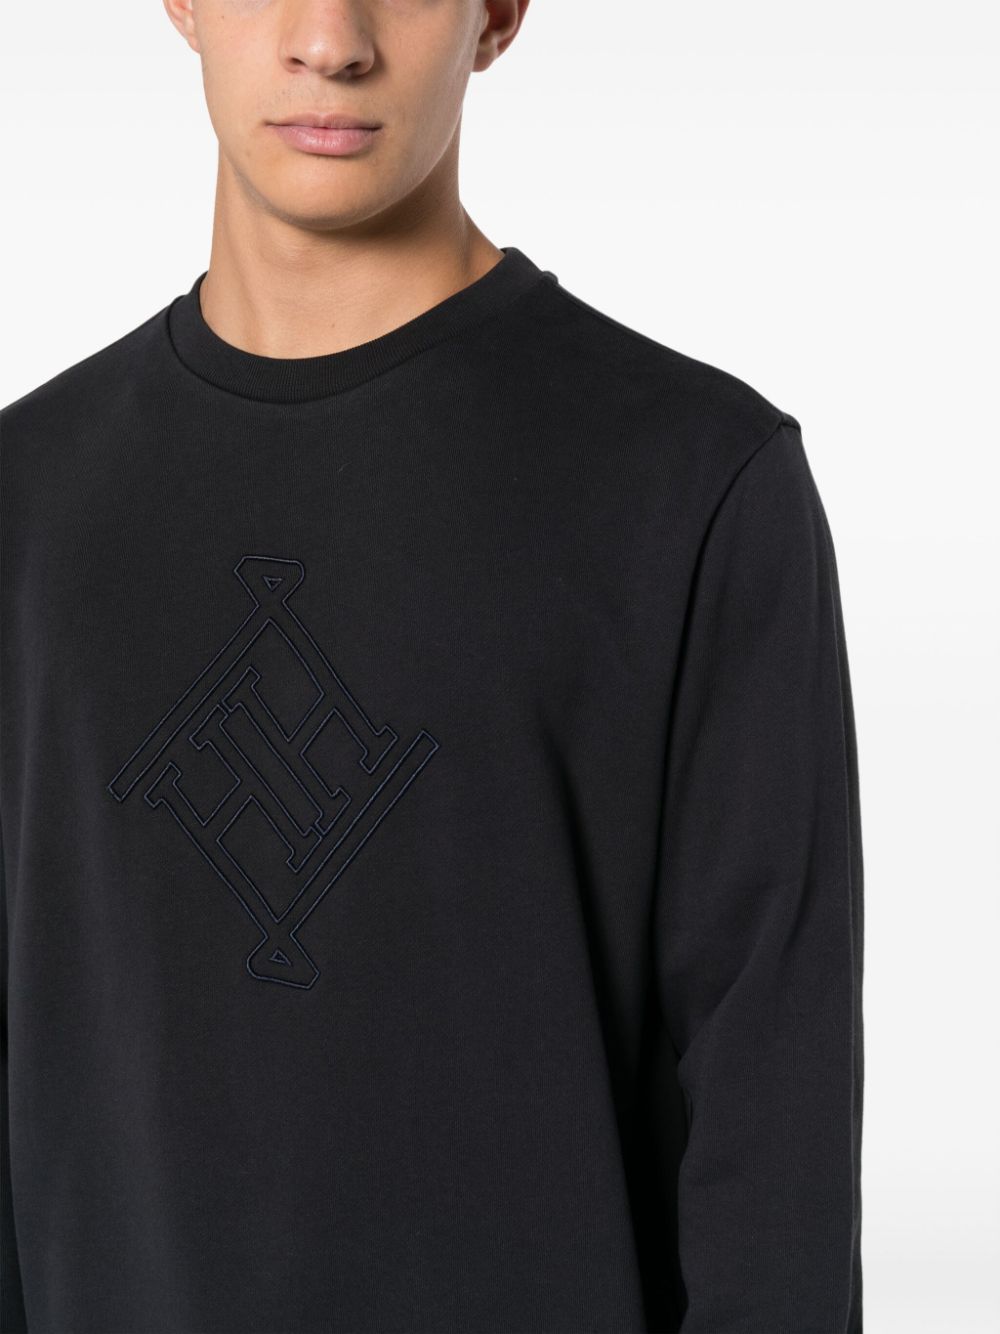 Herno Sweater met geborduurd logo Blauw